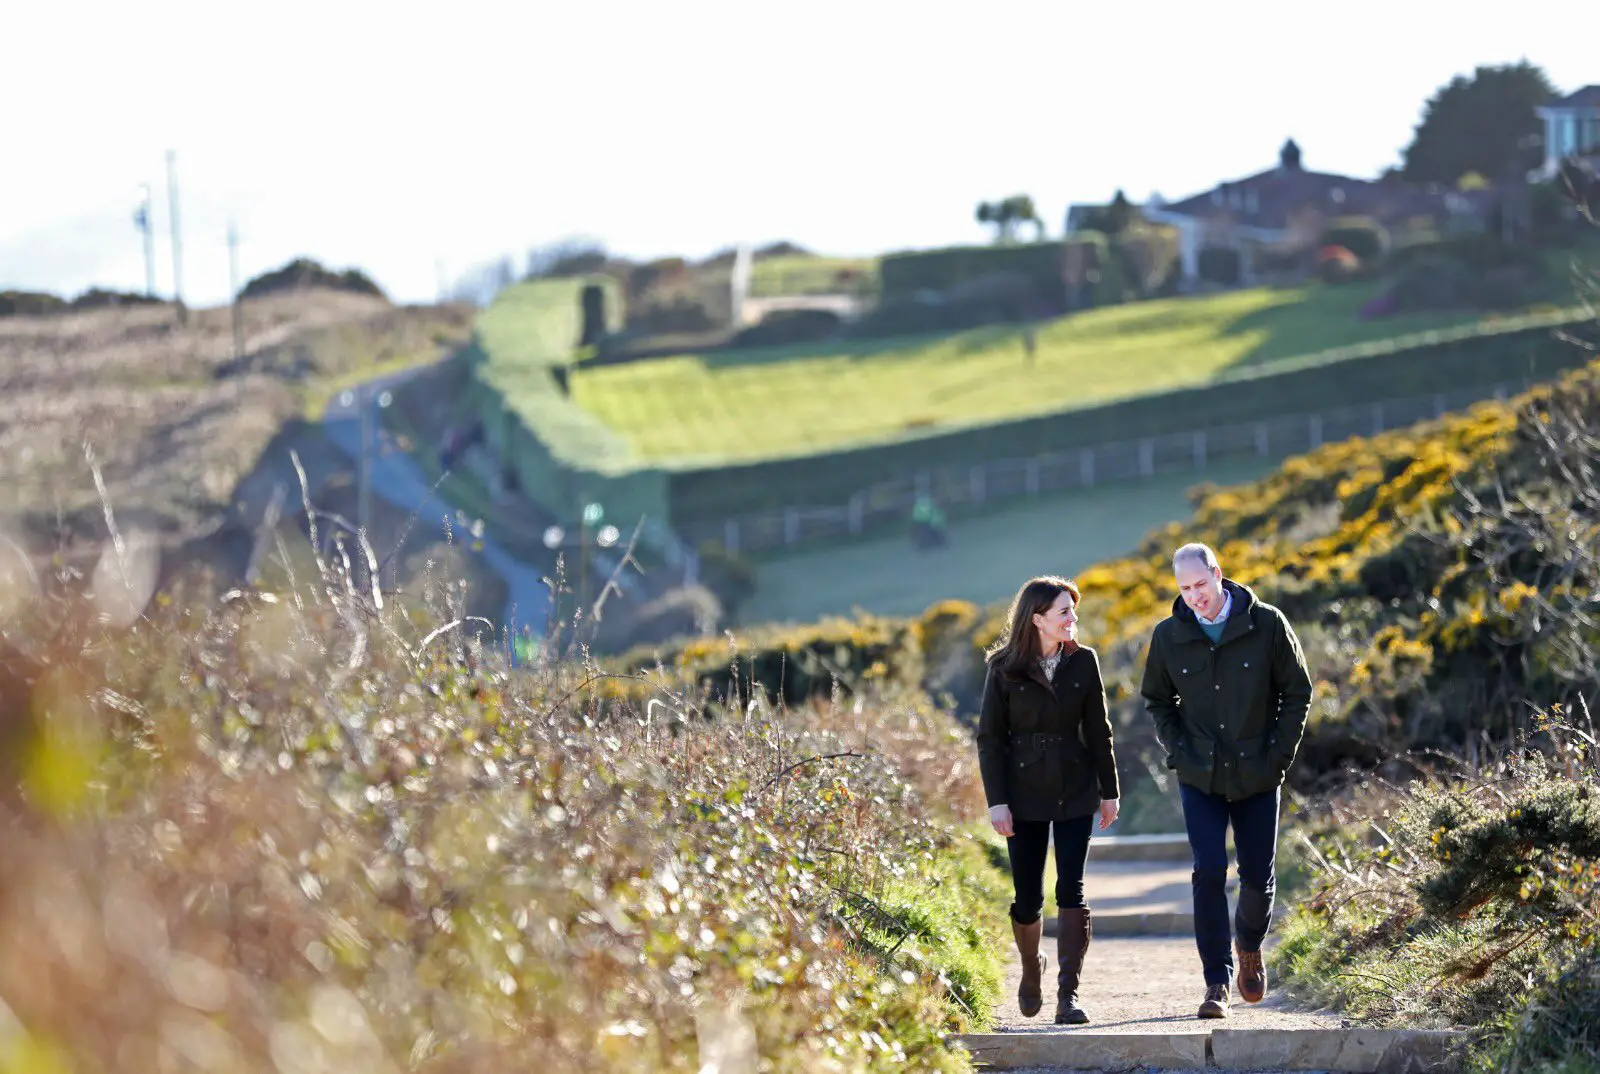 The Duke and Duchess of Cambridge enjoyed scenic walk in Ireland